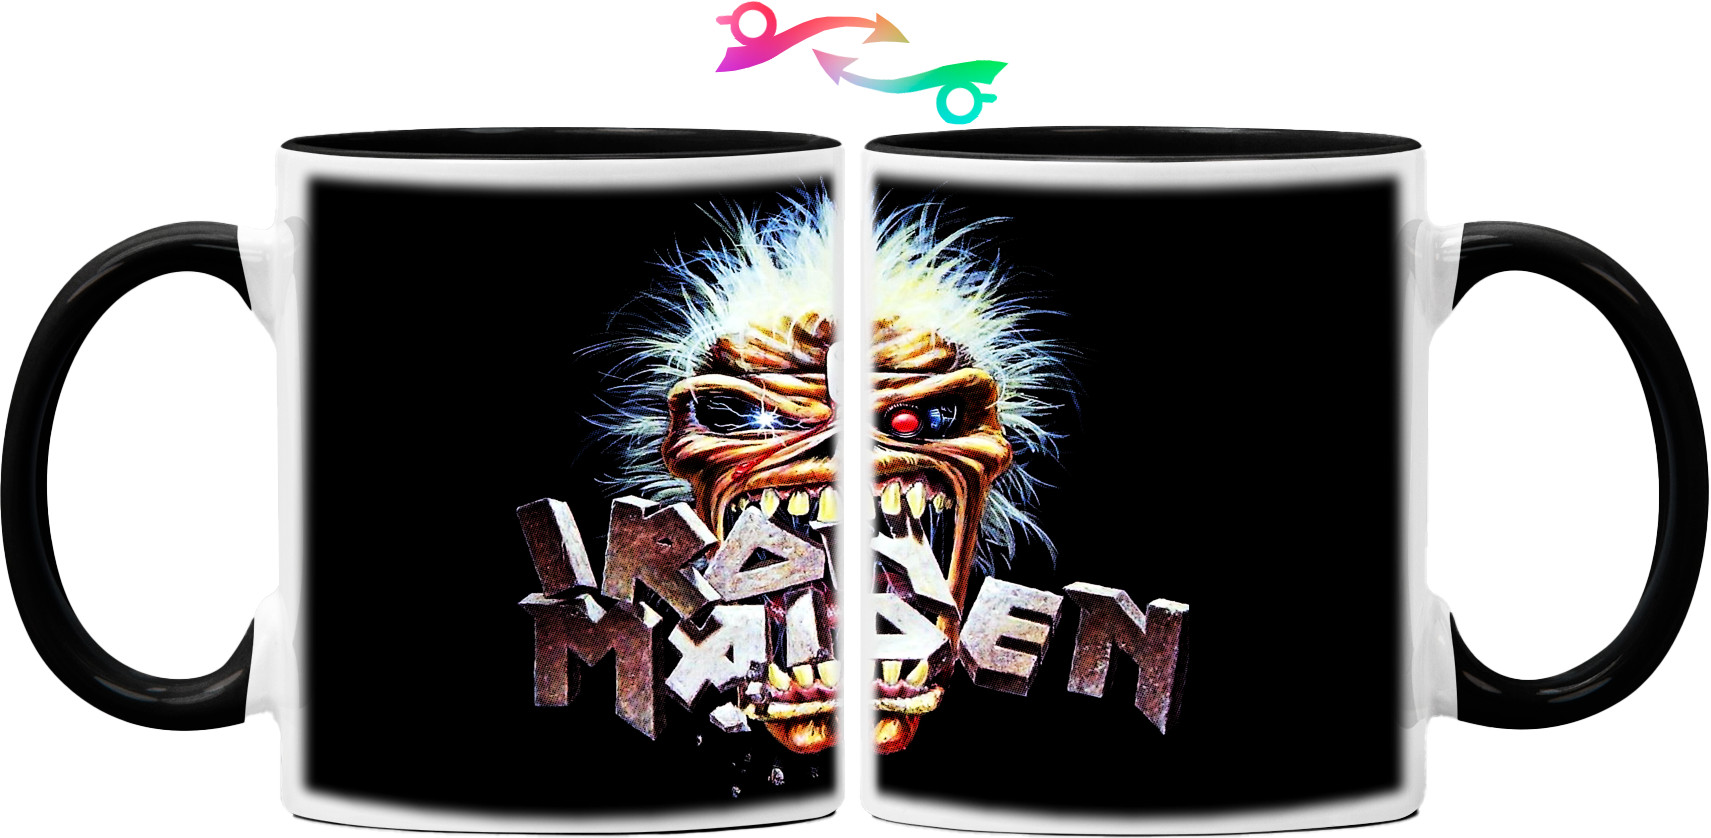 Iron Maiden 26